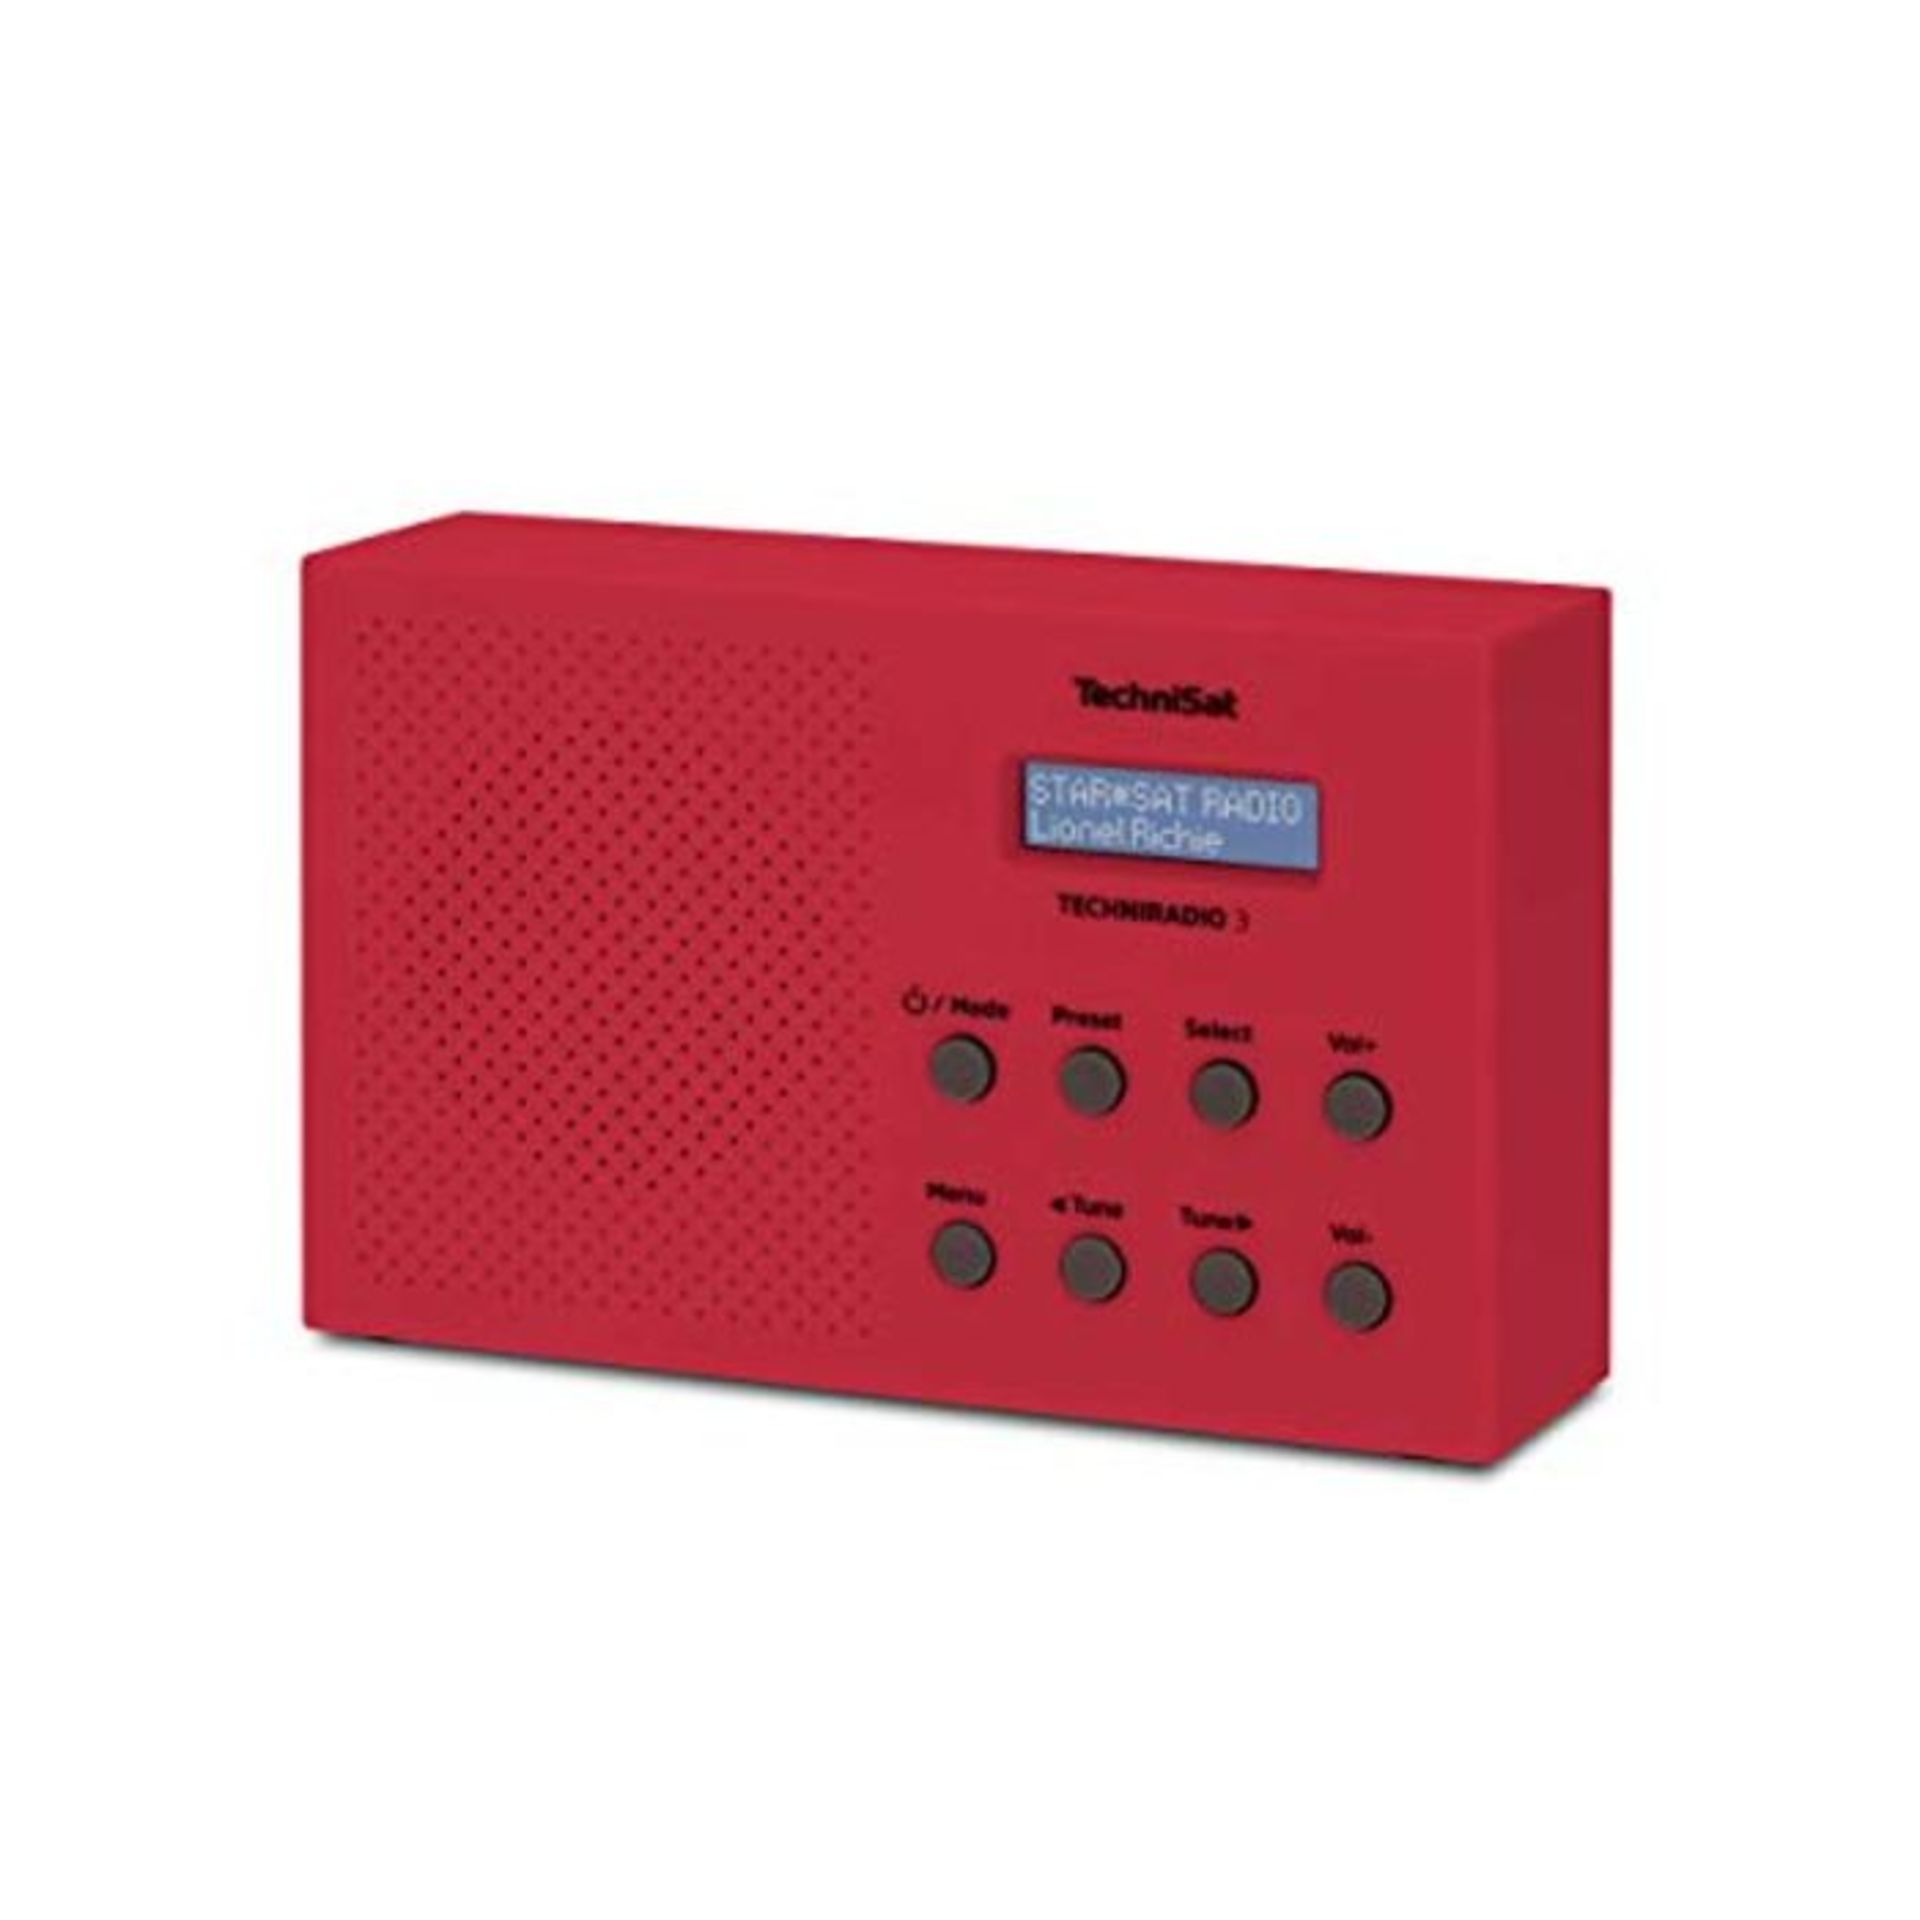 TechniSat TechniRadio 3 DAB Radio (DAB, UKW, portabel, Radiowecker, Blockdesign) rot